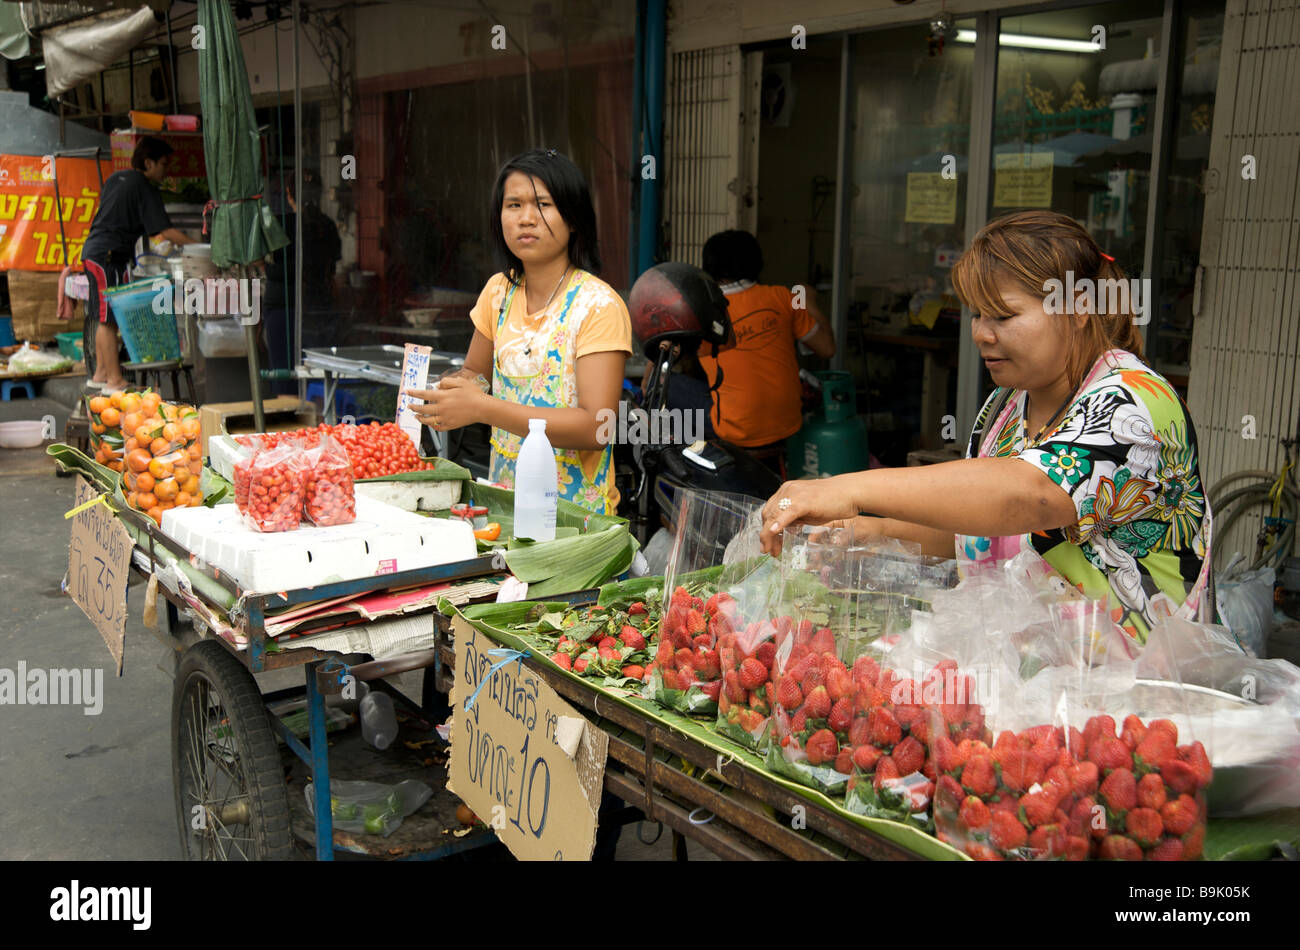 Deux femmes thaïlandaises vendant des fruits frais à leurs étals de rue à Bangkok Thaïlande Banque D'Images